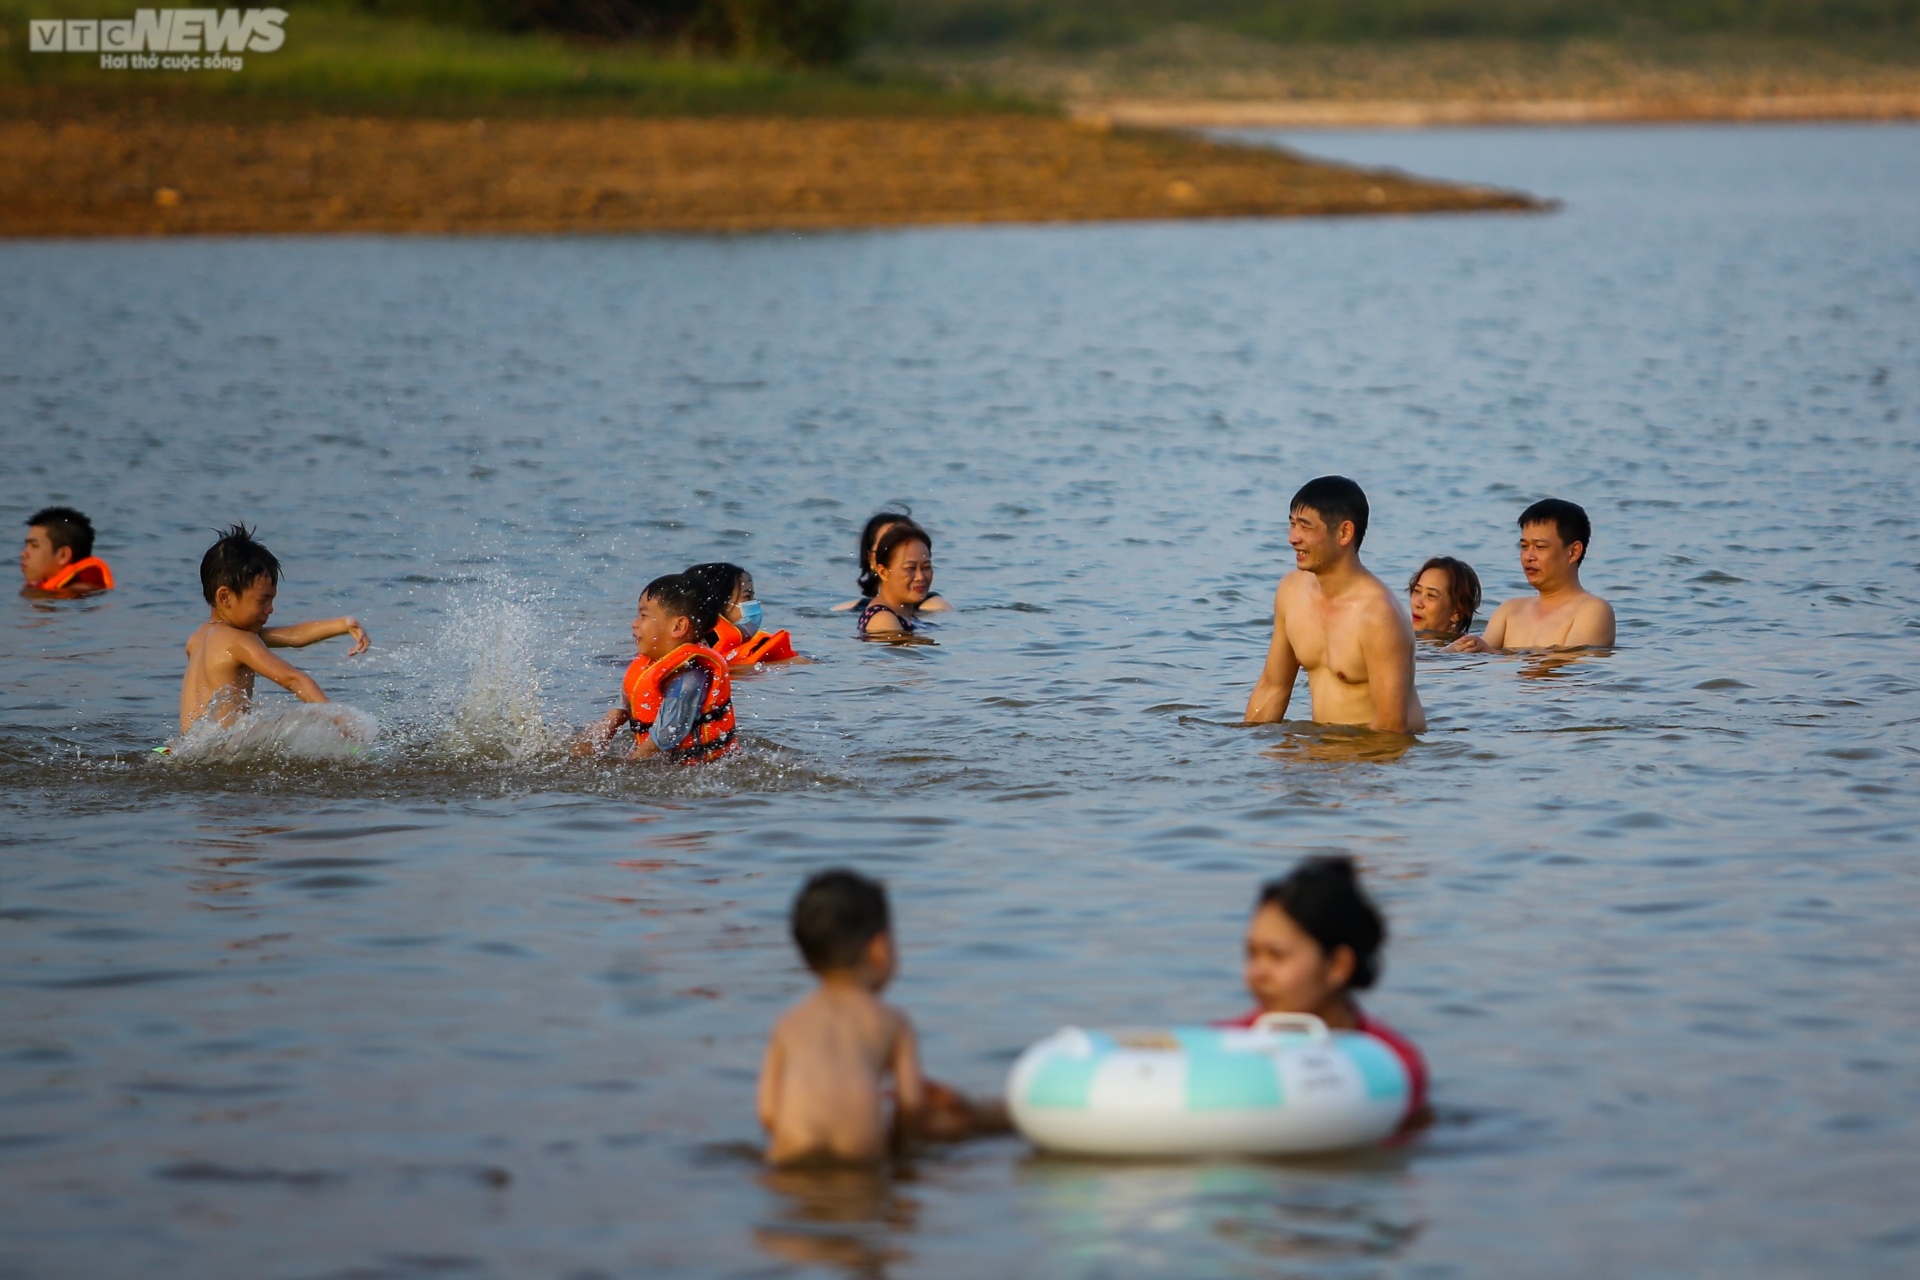 Chiều hè đổ lửa, người dân Hà Nội tìm sông hồ giải nhiệt - ảnh 10